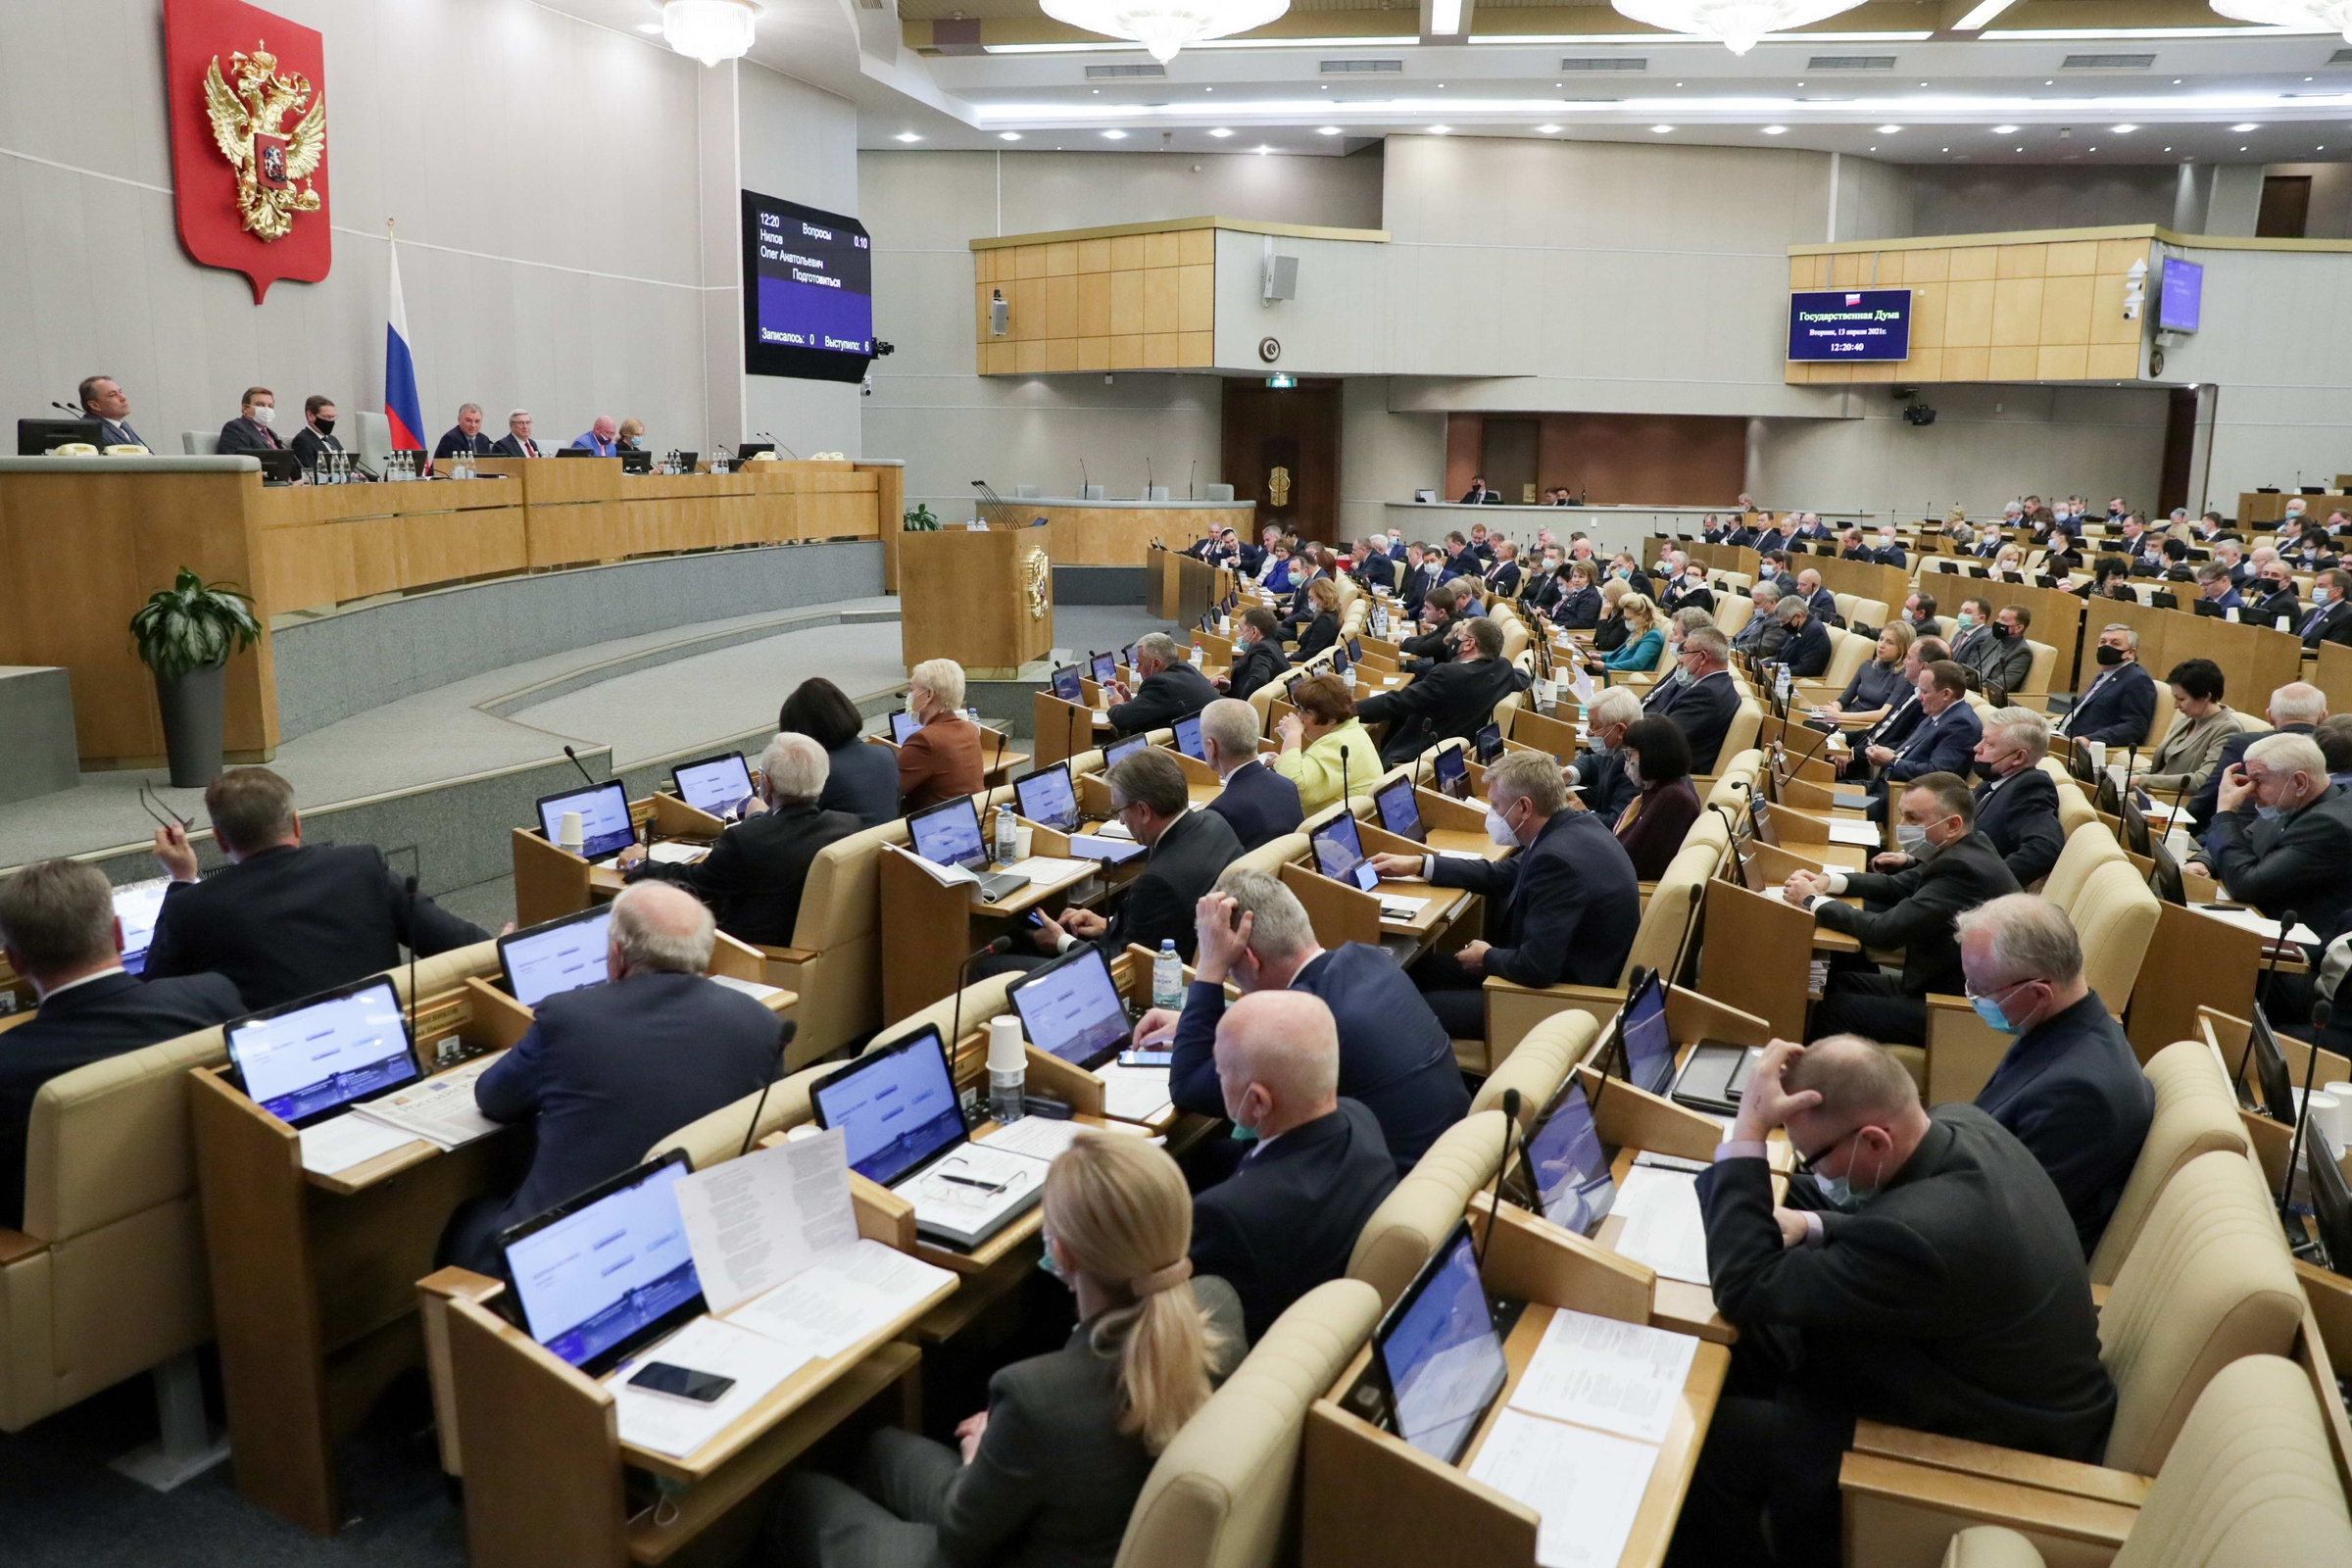 Пленарное заседание Госдумы. Фото © Агентство городских новостей "Москва" /Пресс-служба нижней палаты парламента